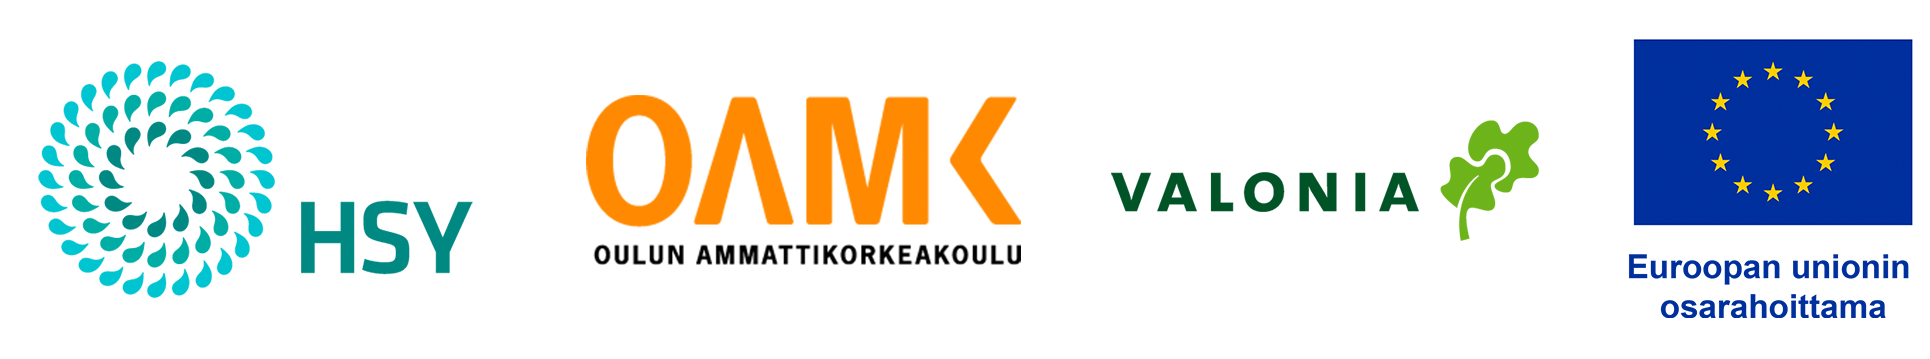 Logot: HSY, OAMK, Valonia, Euroopan unionin osarahoittama